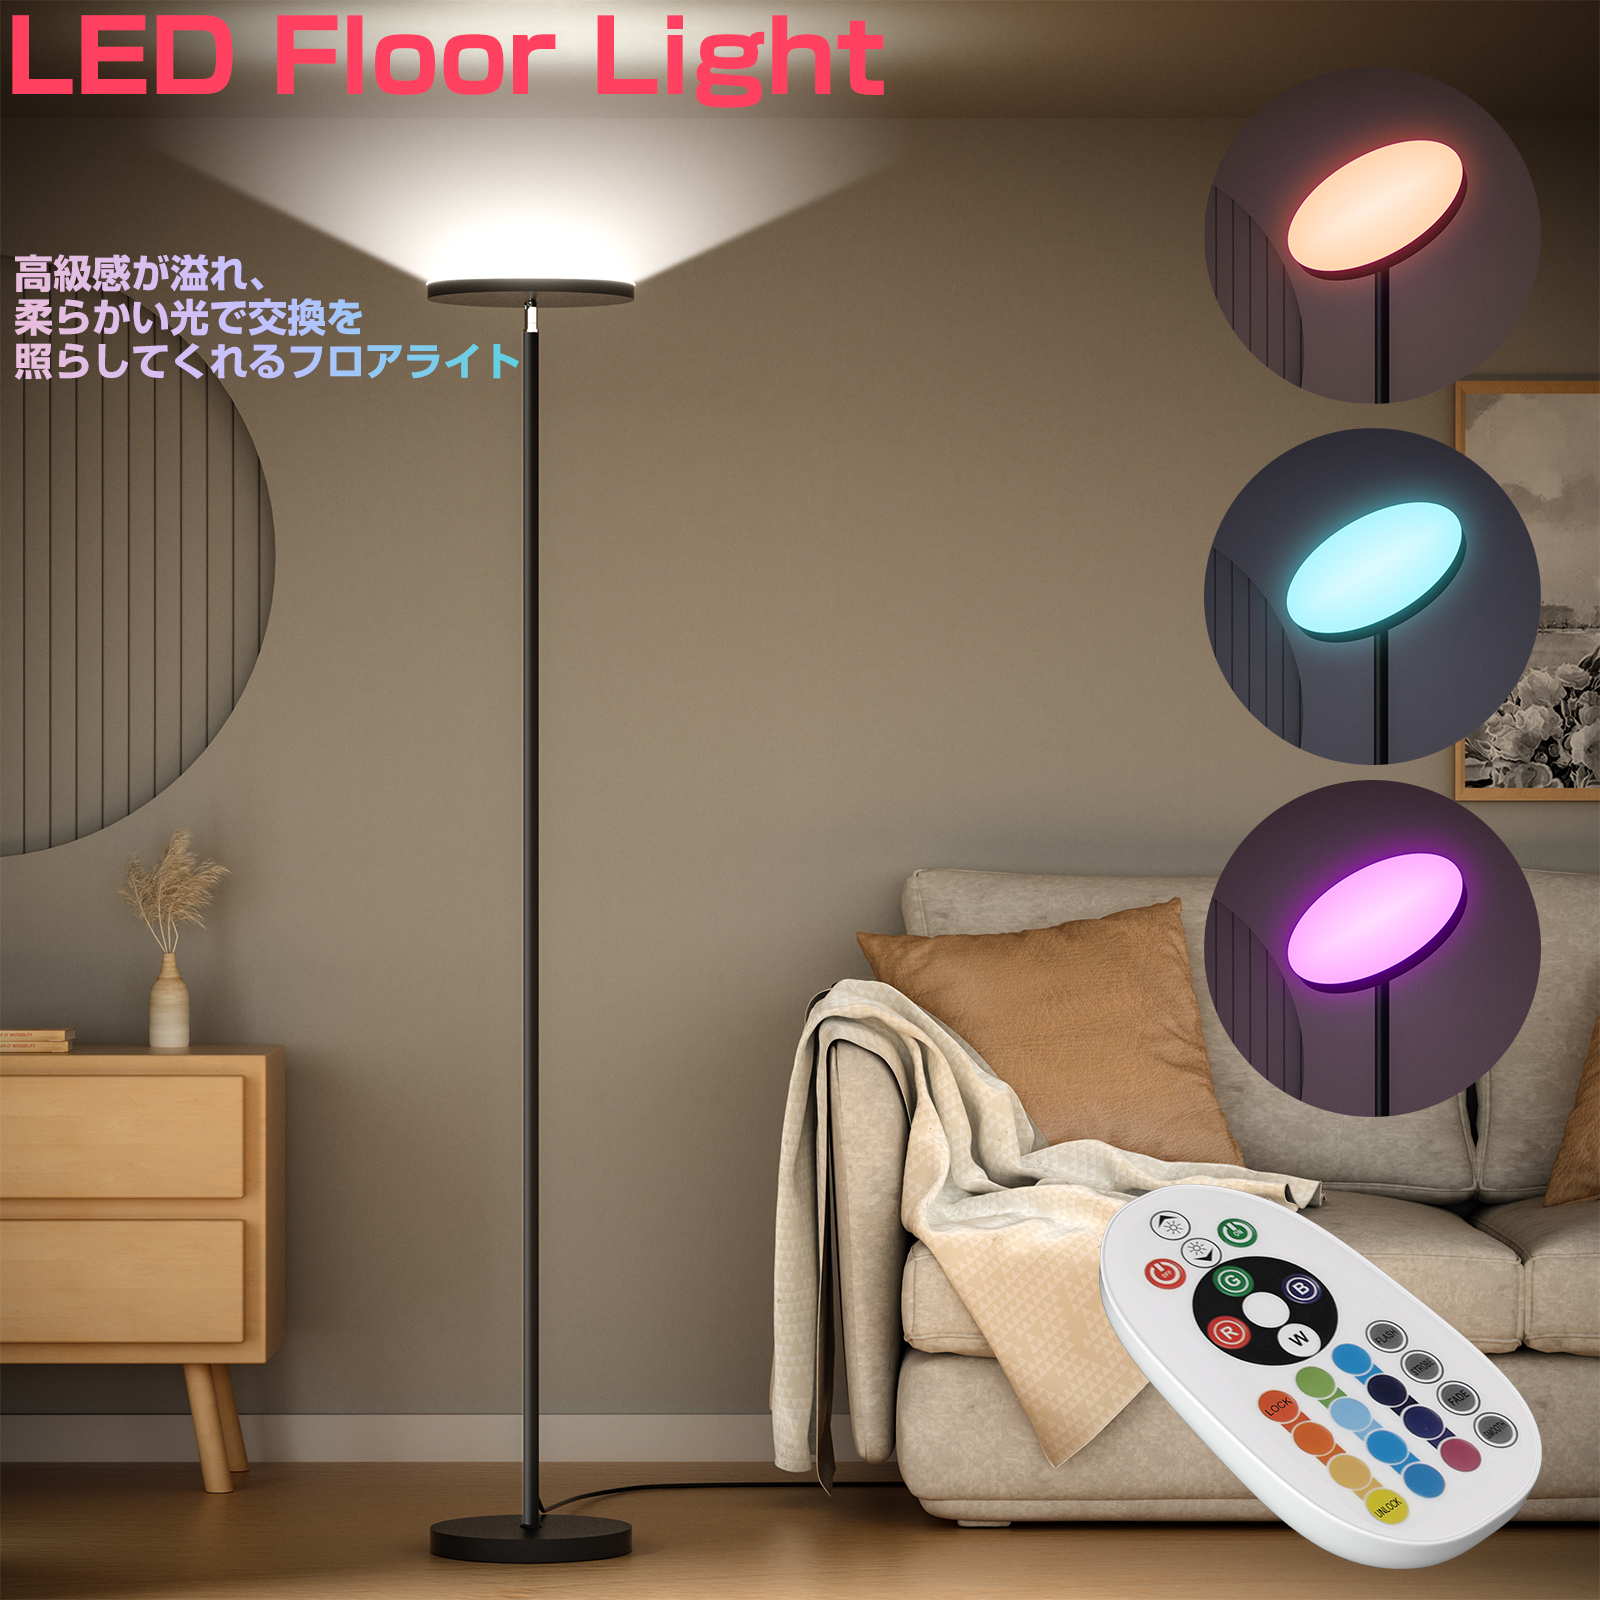 フロアライト 間接照明 スタンドライト LEDフロアランプ フロアスタンド 調光調色 RGB 寝室 床置き ベッドサイド 癒やし おしゃれ 北欧  リモコン付 アプリ制御 :thn-202106105:thnlight 通販